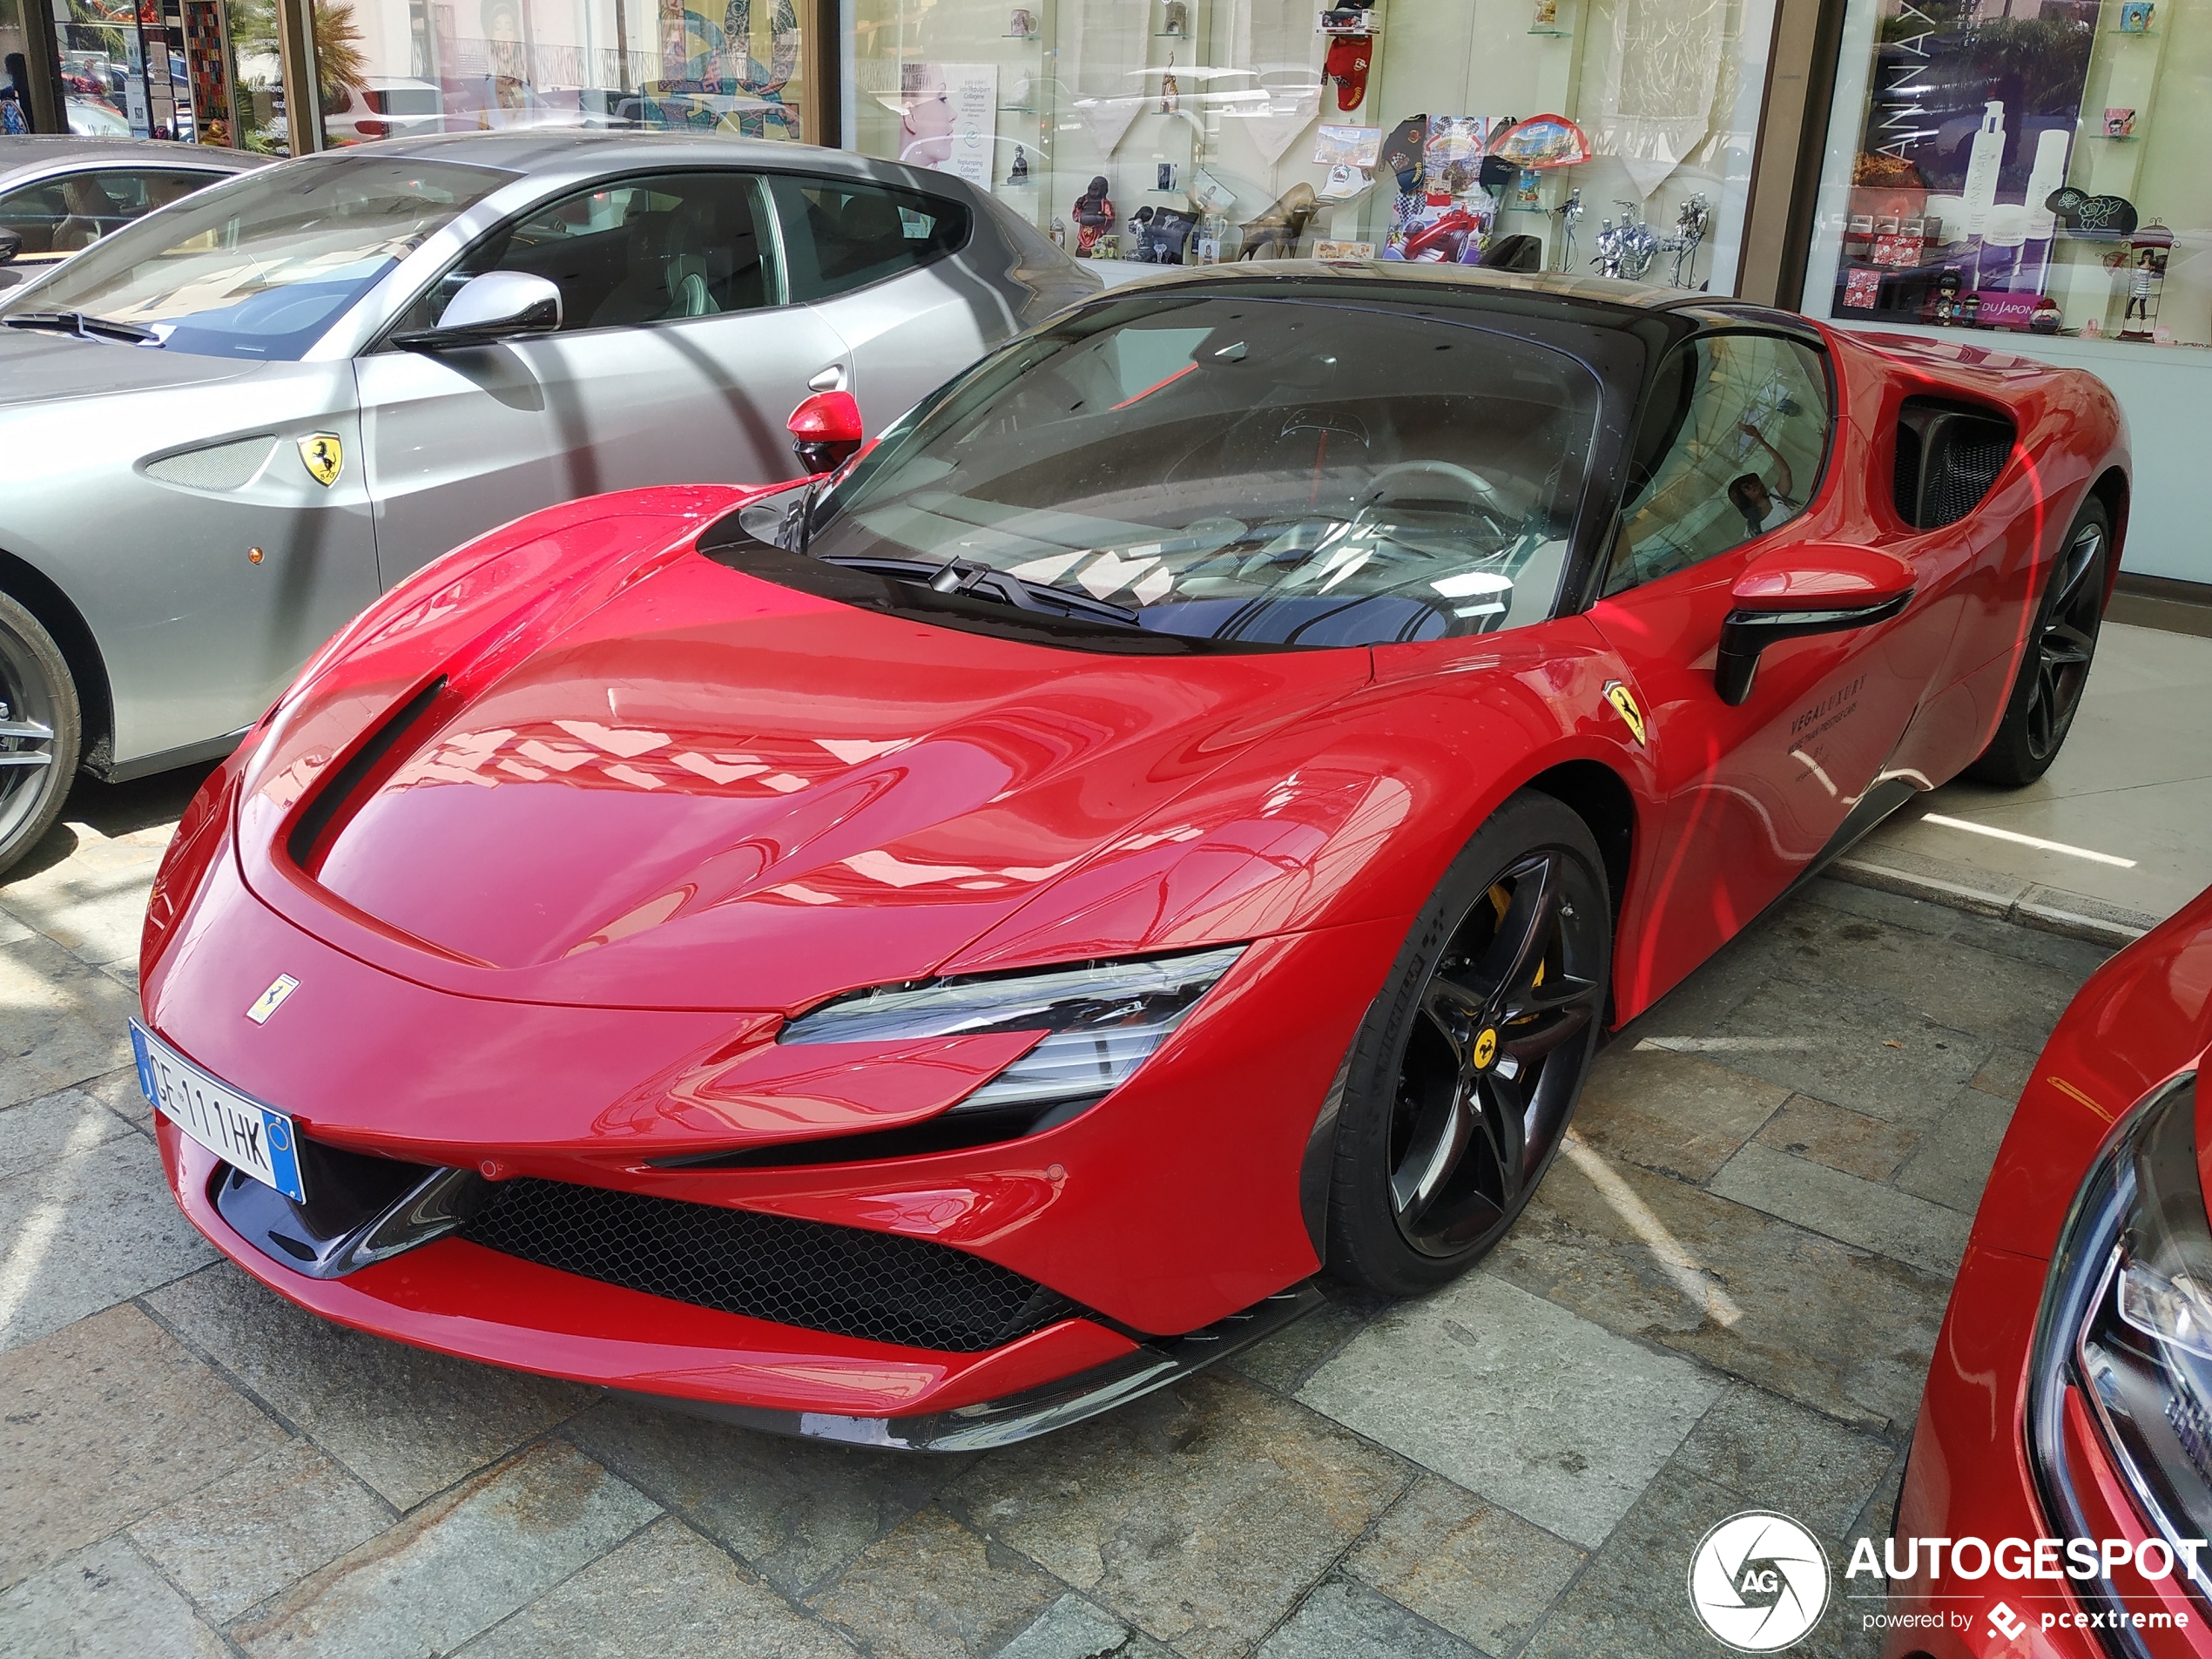 Monaco heeft aardig wat exemplaren van de Ferrari SF90 Stradale